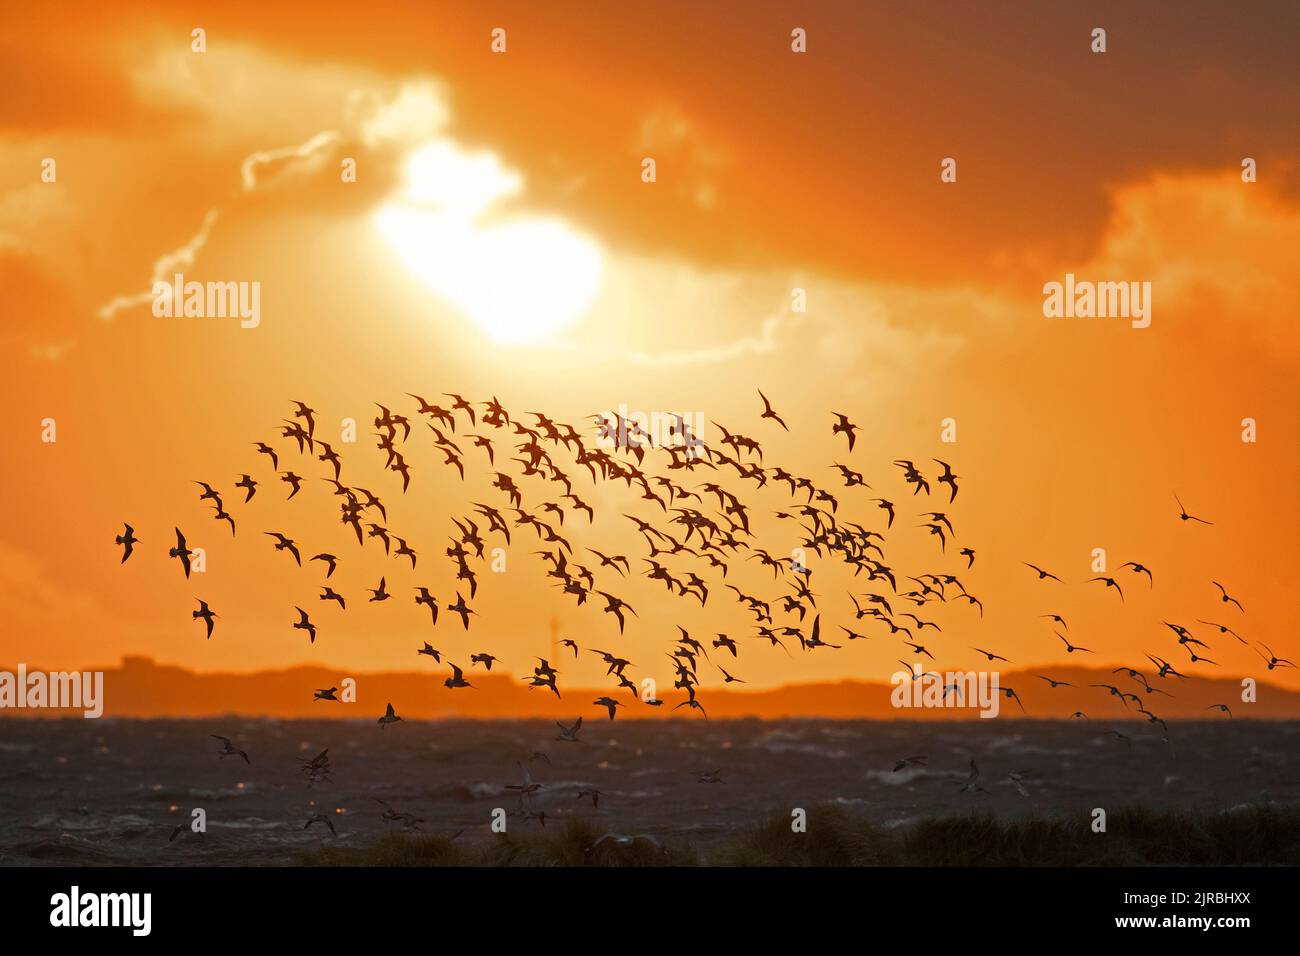 Un énorme troupeau de godwits à queue de bar (Limosa lapponica) et de nœuds rouges en vol, silhoueted contre le ciel orangé de coucher de soleil le long de la côte de la mer du Nord au printemps Banque D'Images